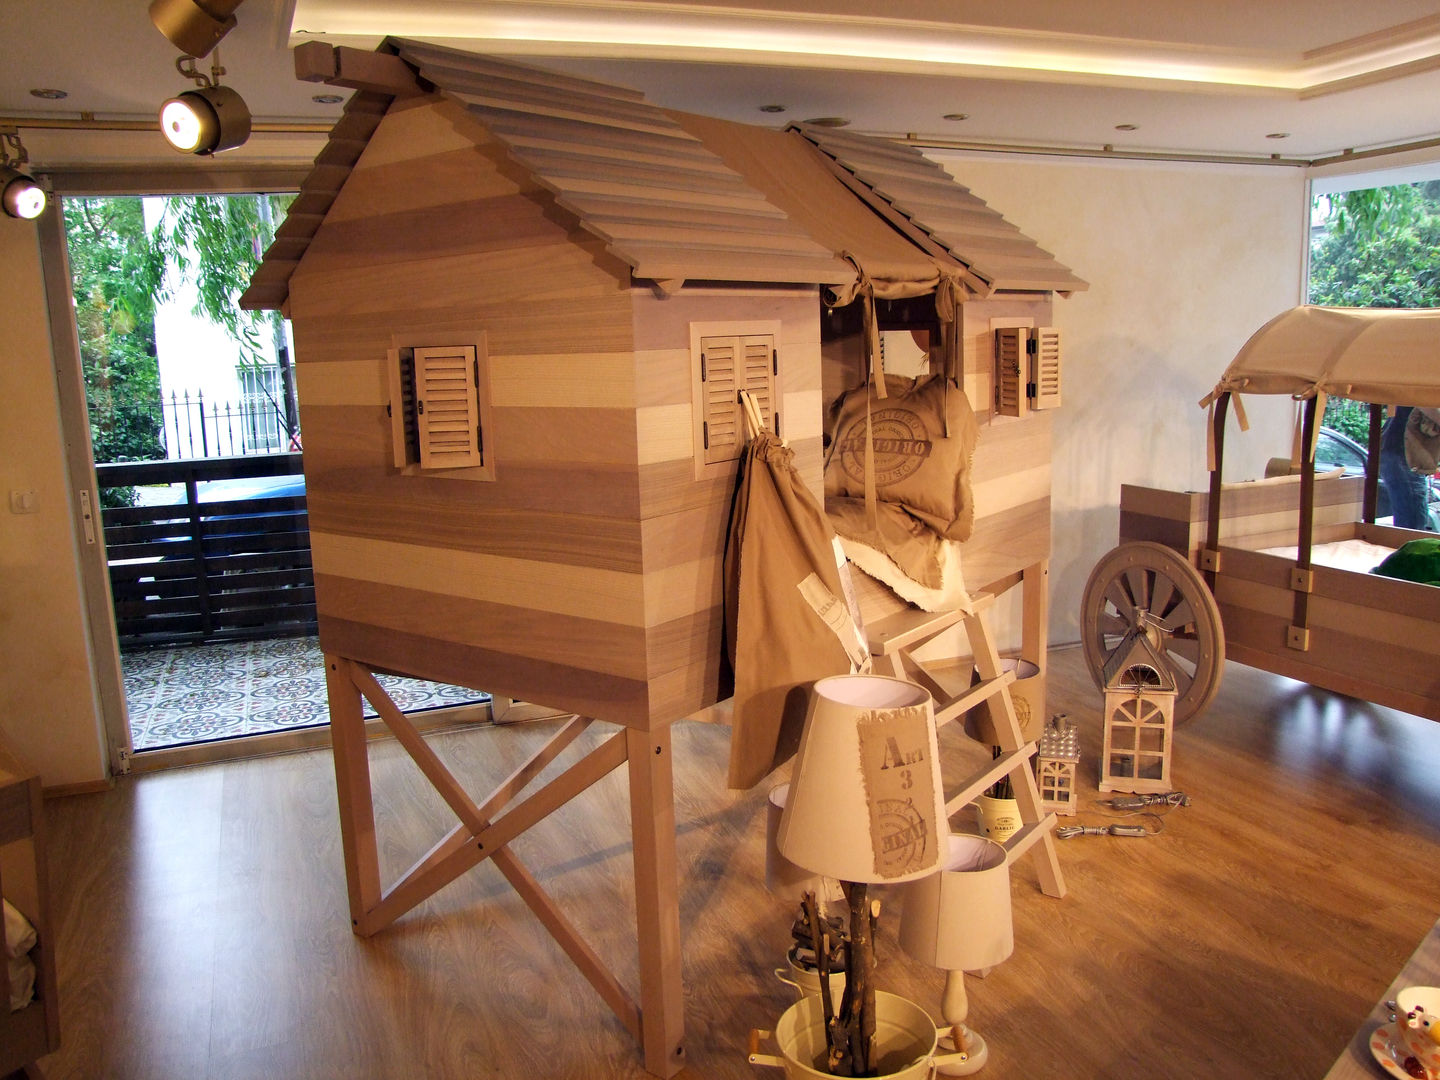 LACOTE Çiftlik temalı bebek ve çocuk odası , Lacote Design Lacote Design Kamar Bayi/Anak Modern Beds & cribs